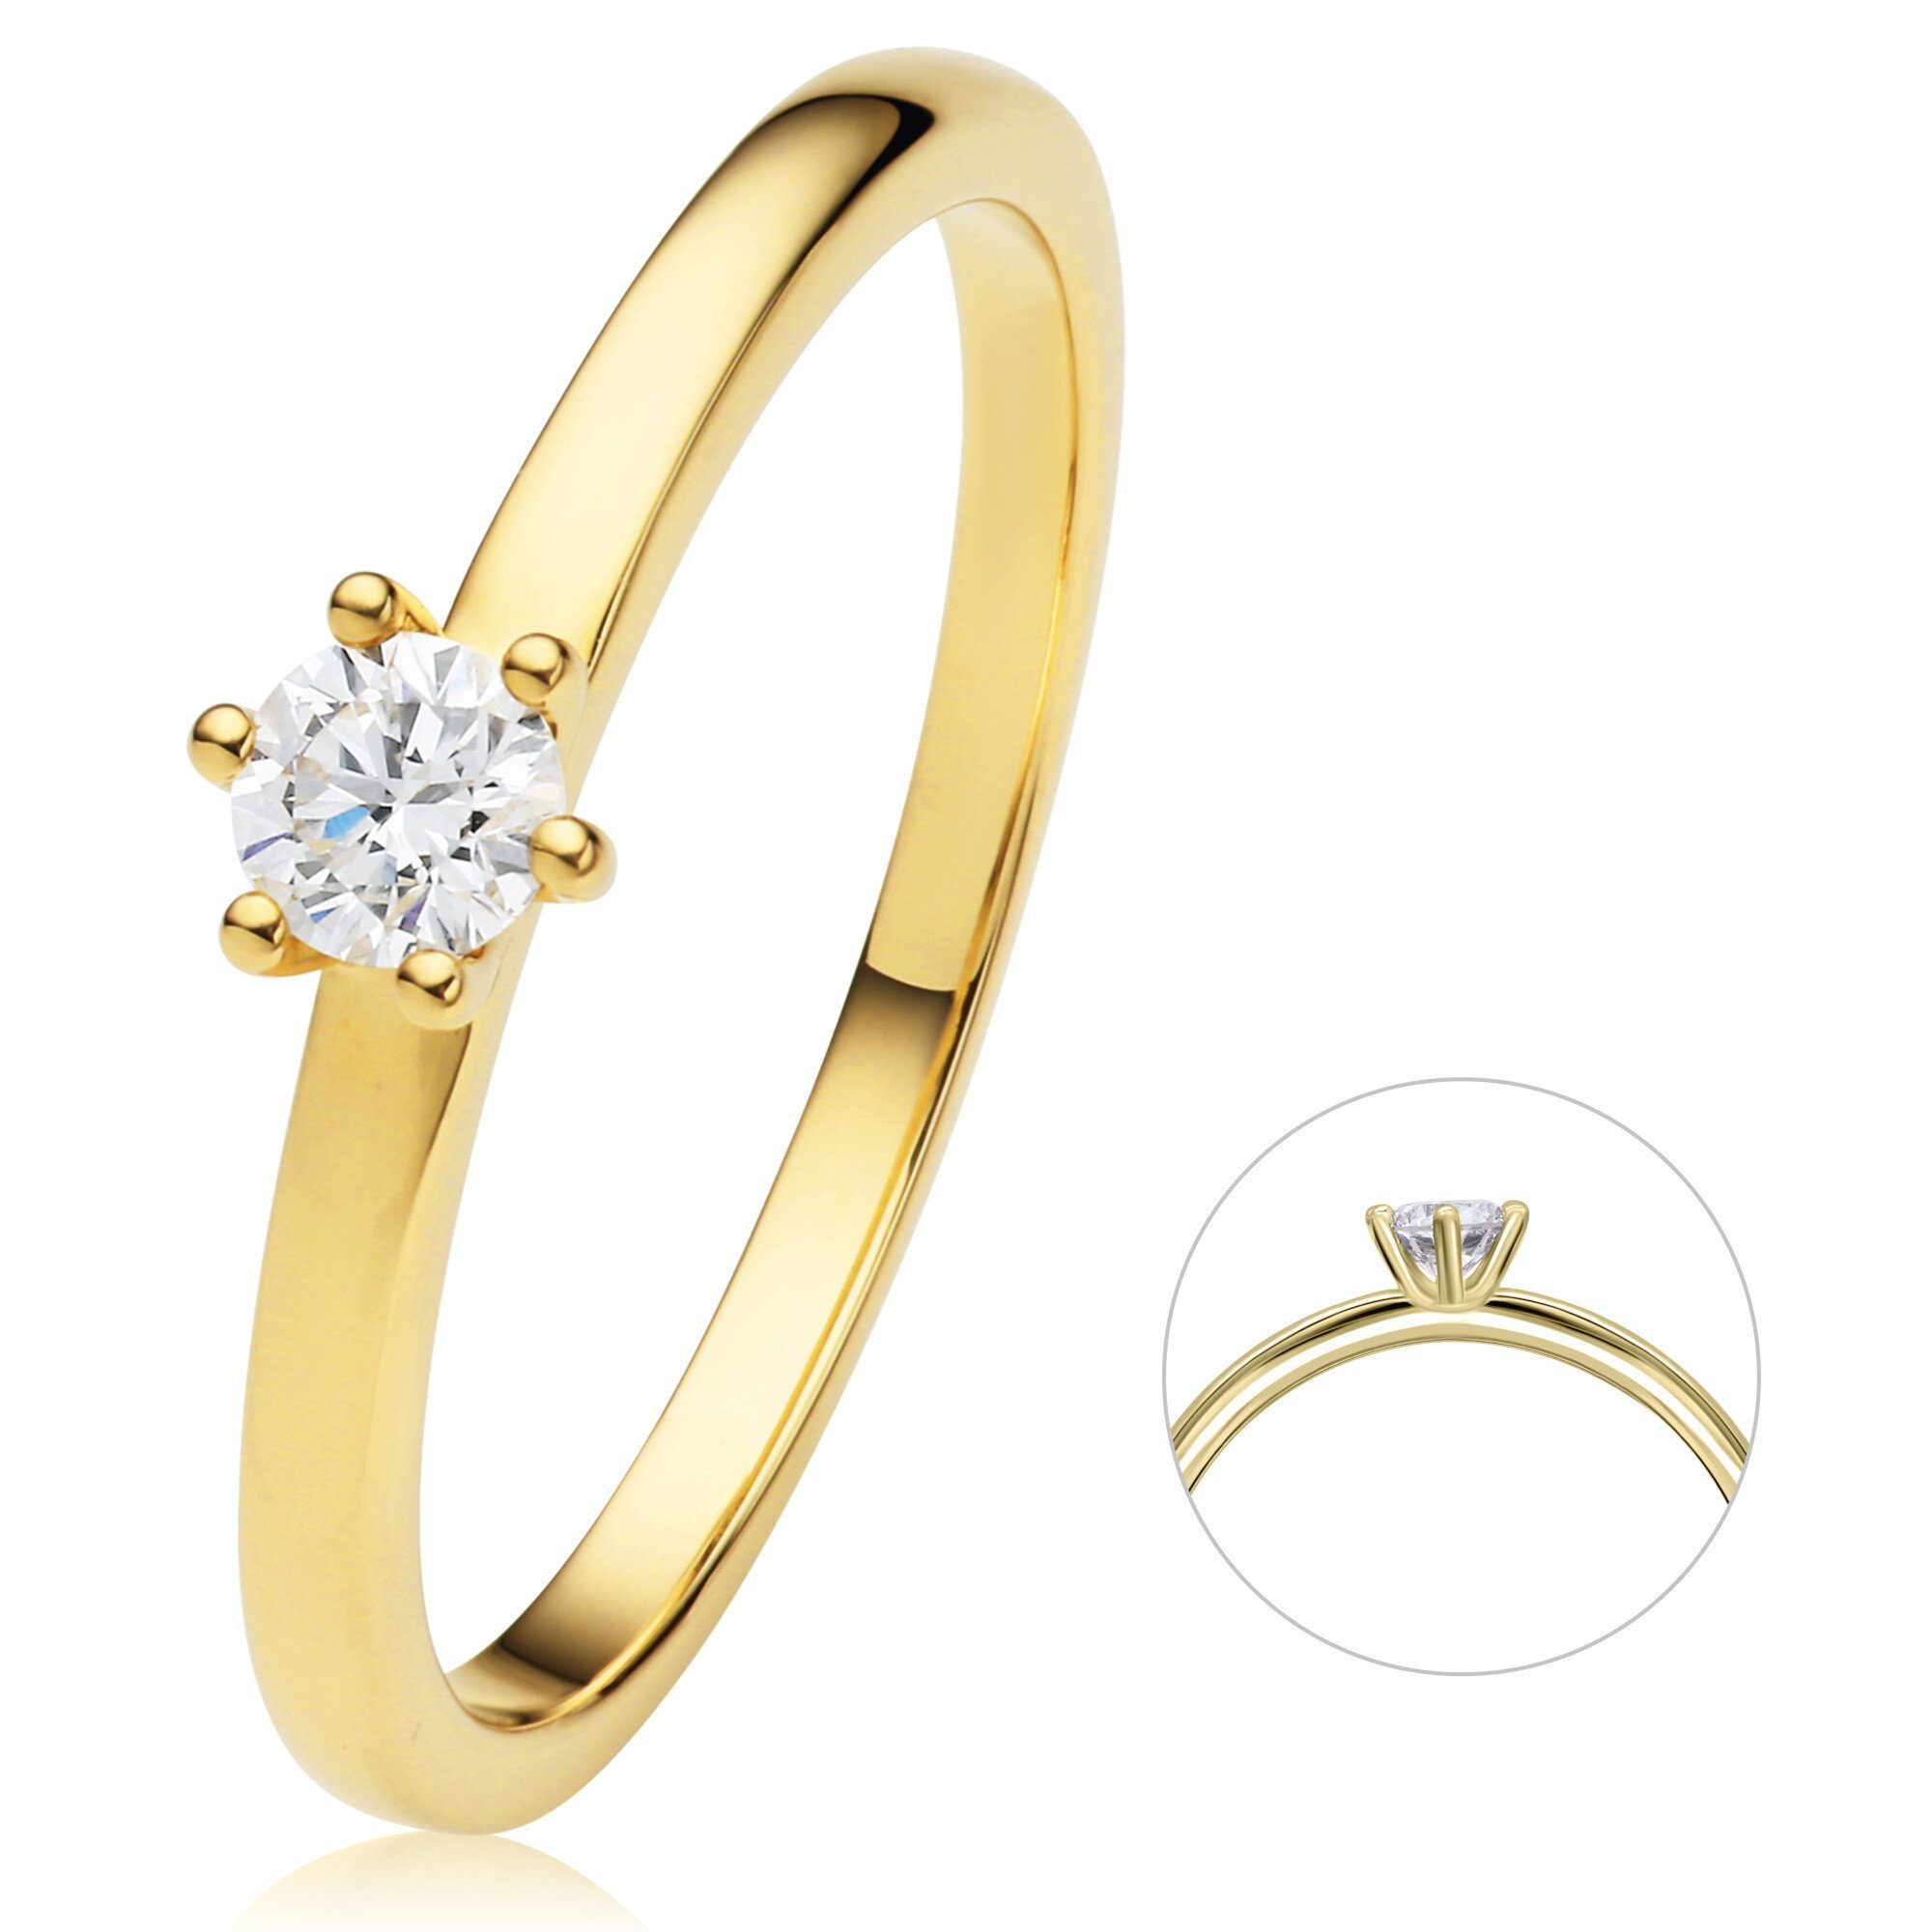 ONE ELEMENT aus Gold Damen Diamant Brillant Ring Diamantring Schmuck 0.2 ct 750 Gelbgold